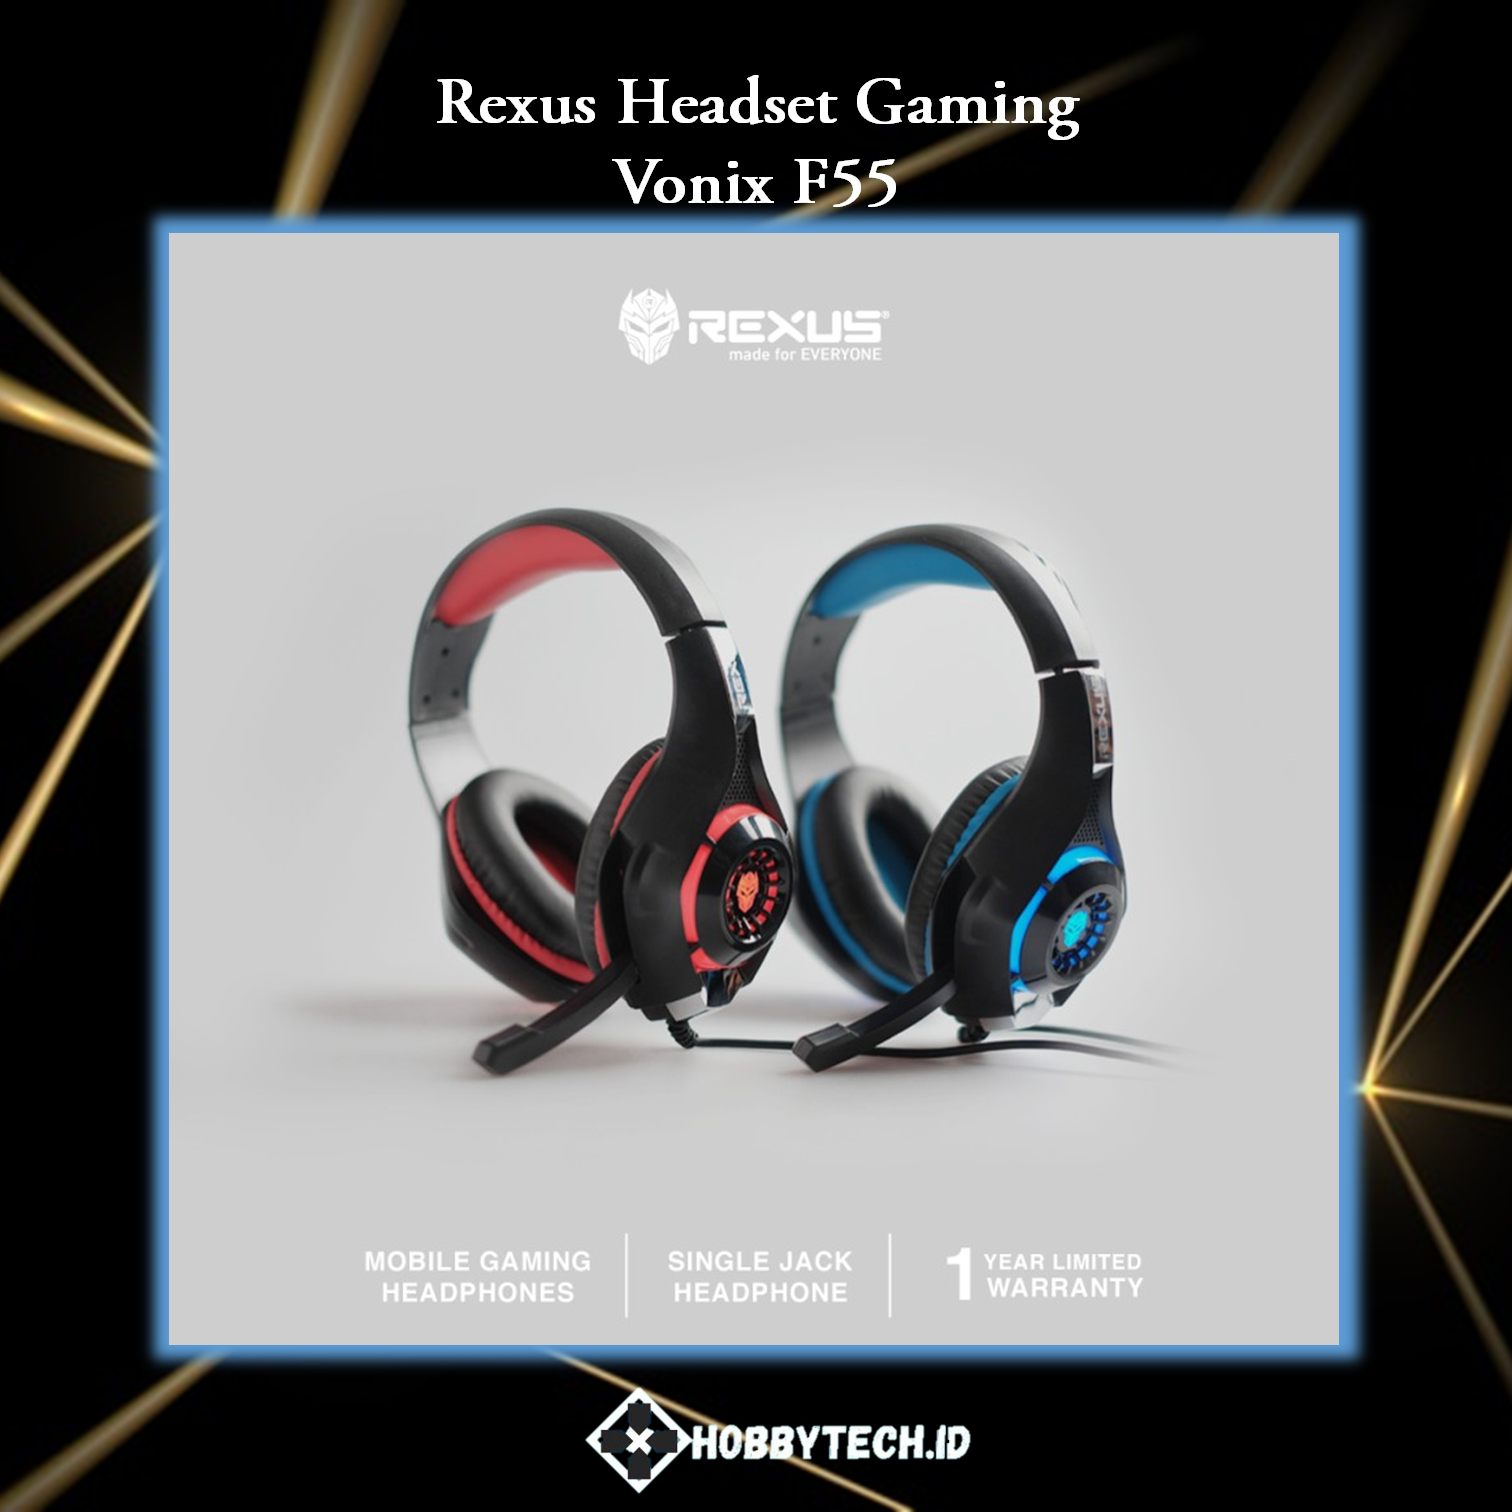 Rexus Headset Gaming Vonix F55